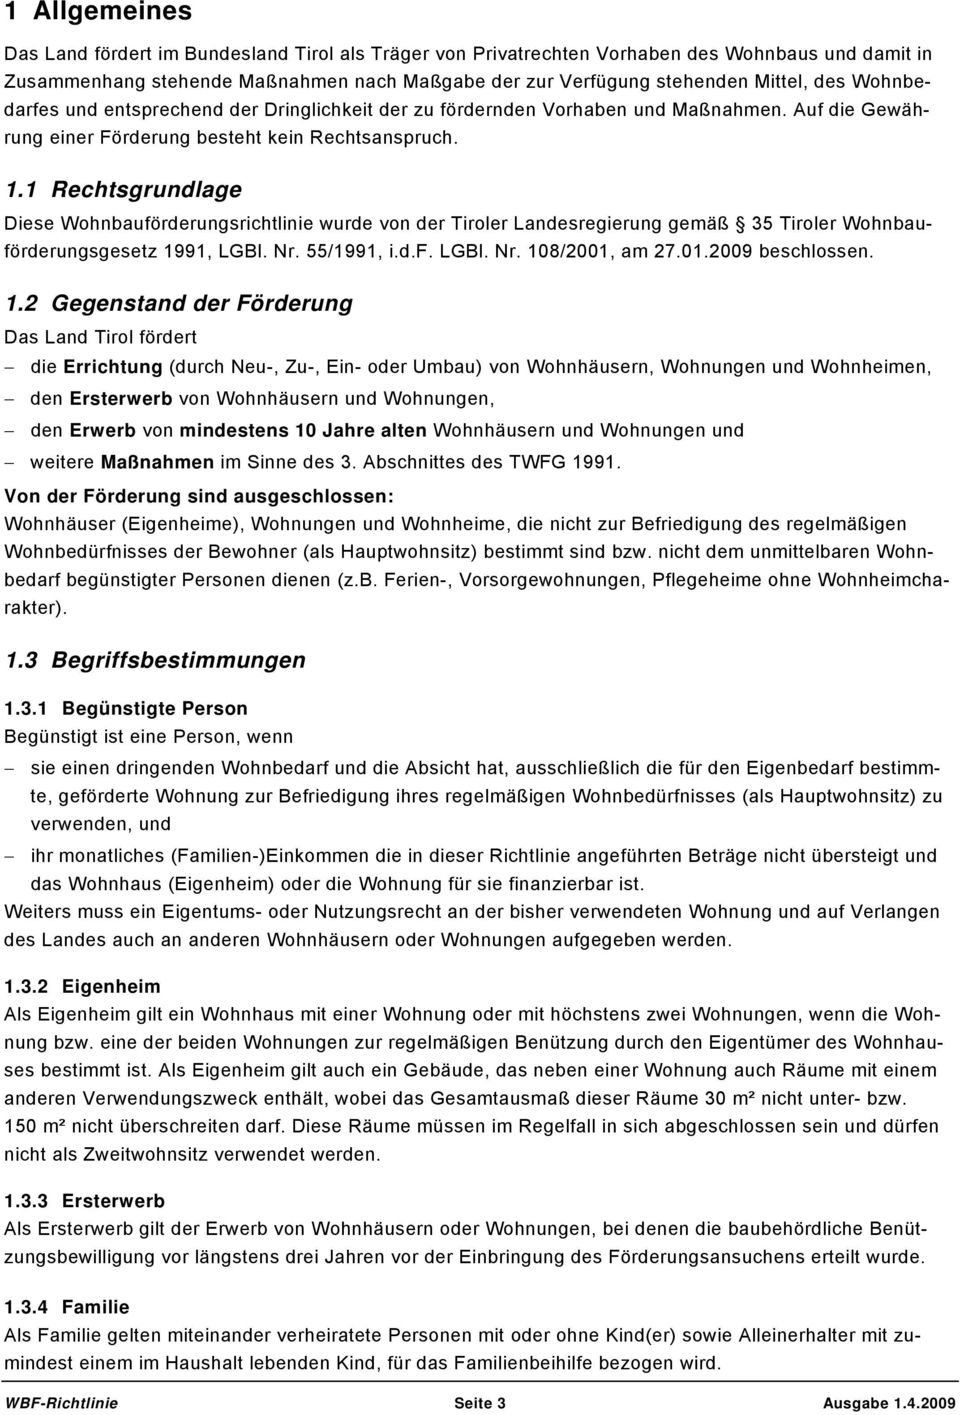 1 Rechtsgrundlage Diese Wohnbauförderungsrichtlinie wurde von der Tiroler Landesregierung gemäß 35 Tiroler Wohnbauförderungsgesetz 1991, LGBl. Nr. 55/1991, i.d.f. LGBl. Nr. 108/2001, am 27.01.2009 beschlossen.